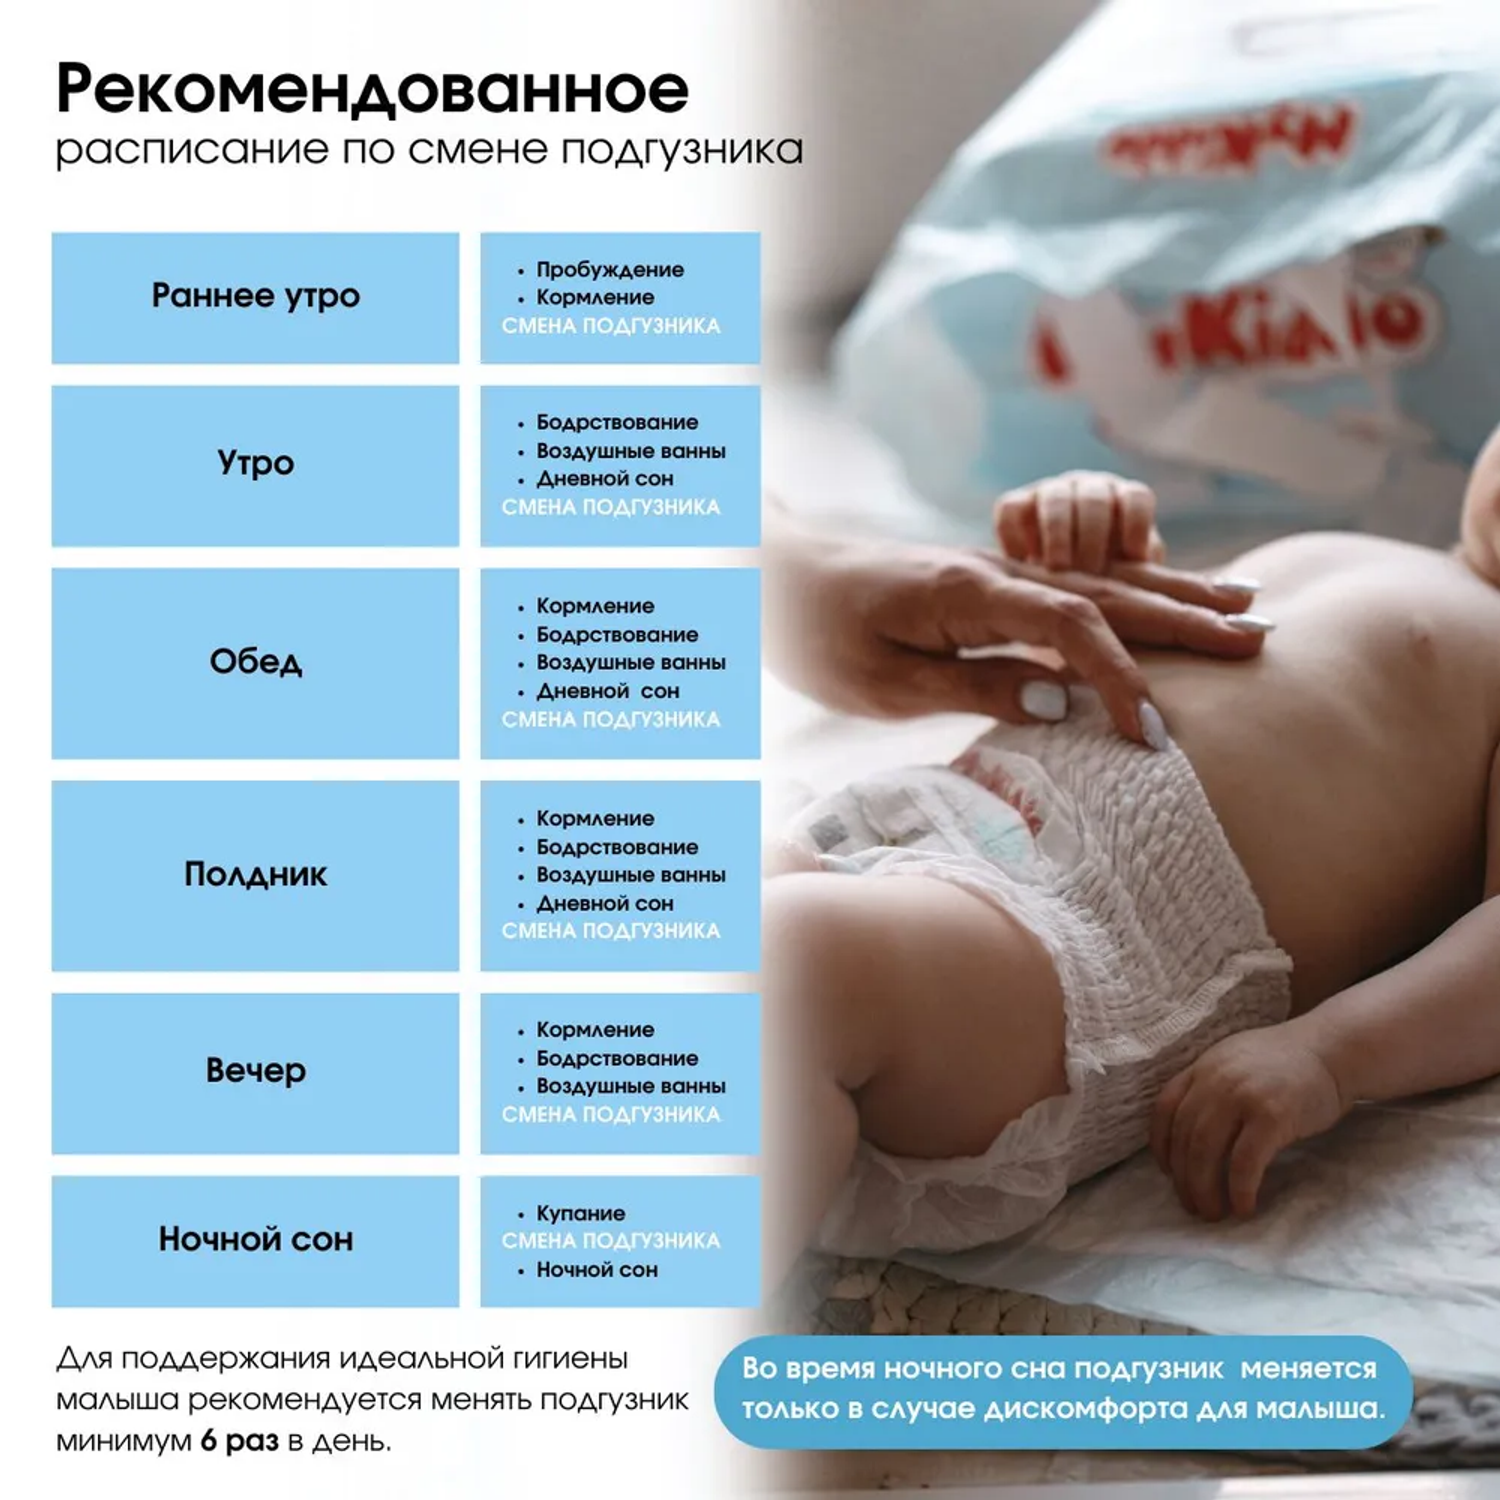 Подгузники MyKiddo Premium для новорожденных 0-6 кг размер S 2 уп по 24 шт - фото 3